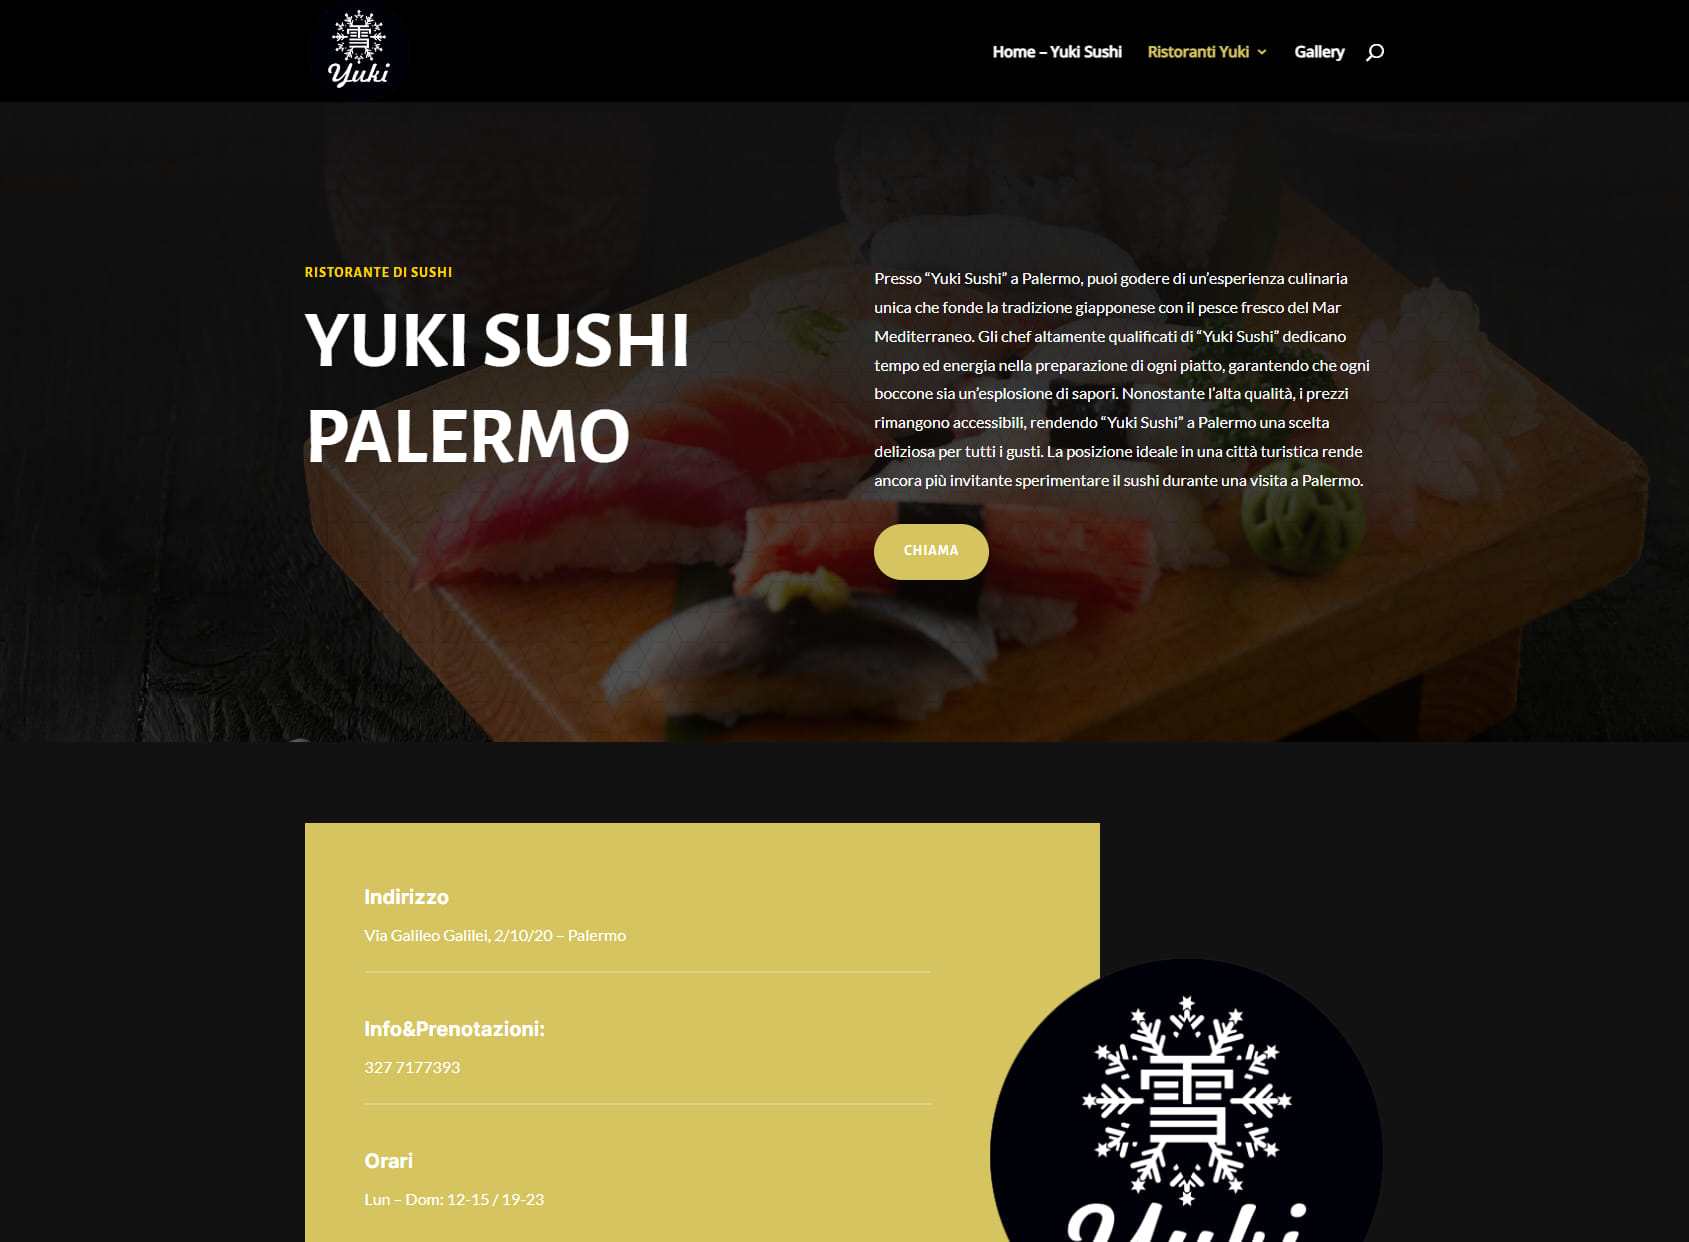 Yuki Sushi Palermo